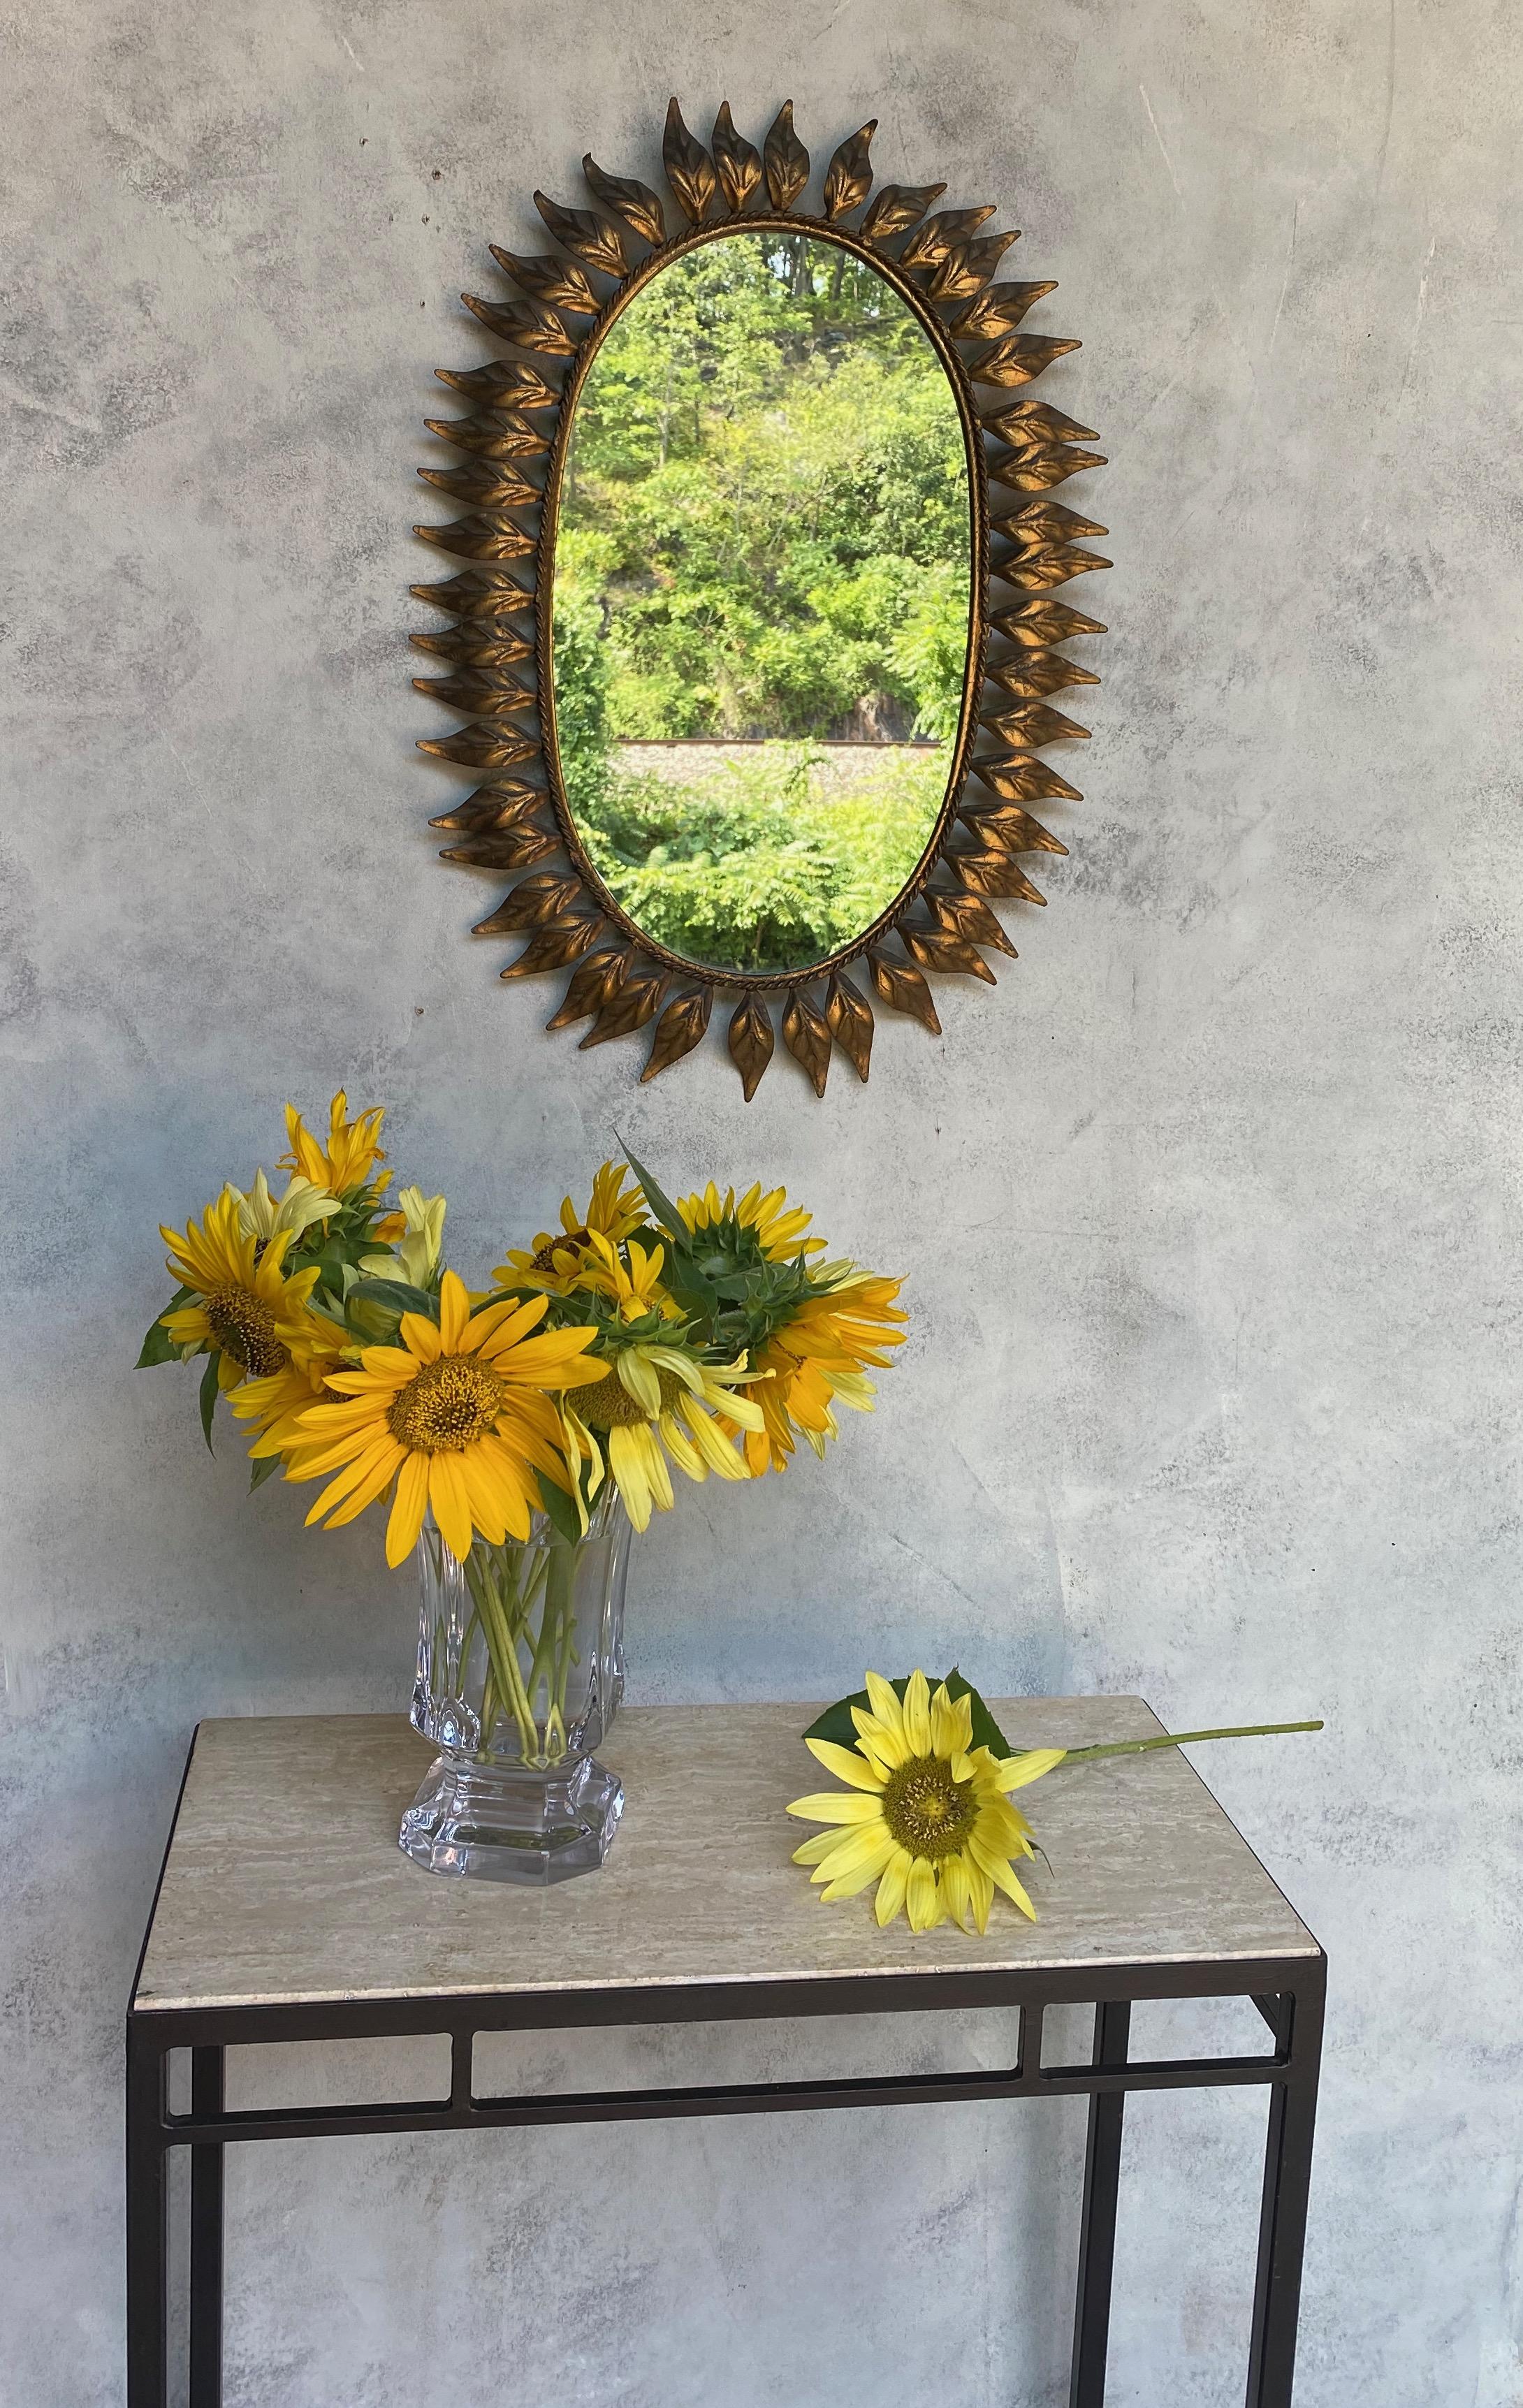 Ce joli miroir ovale à effet soleil présente des feuilles incurvées et rayonnantes entourant un cadre aux délicats détails tressés. Il est recouvert d'une riche patine dorée. Nous avons récemment ajouté un support en feutre au miroir pour lui donner